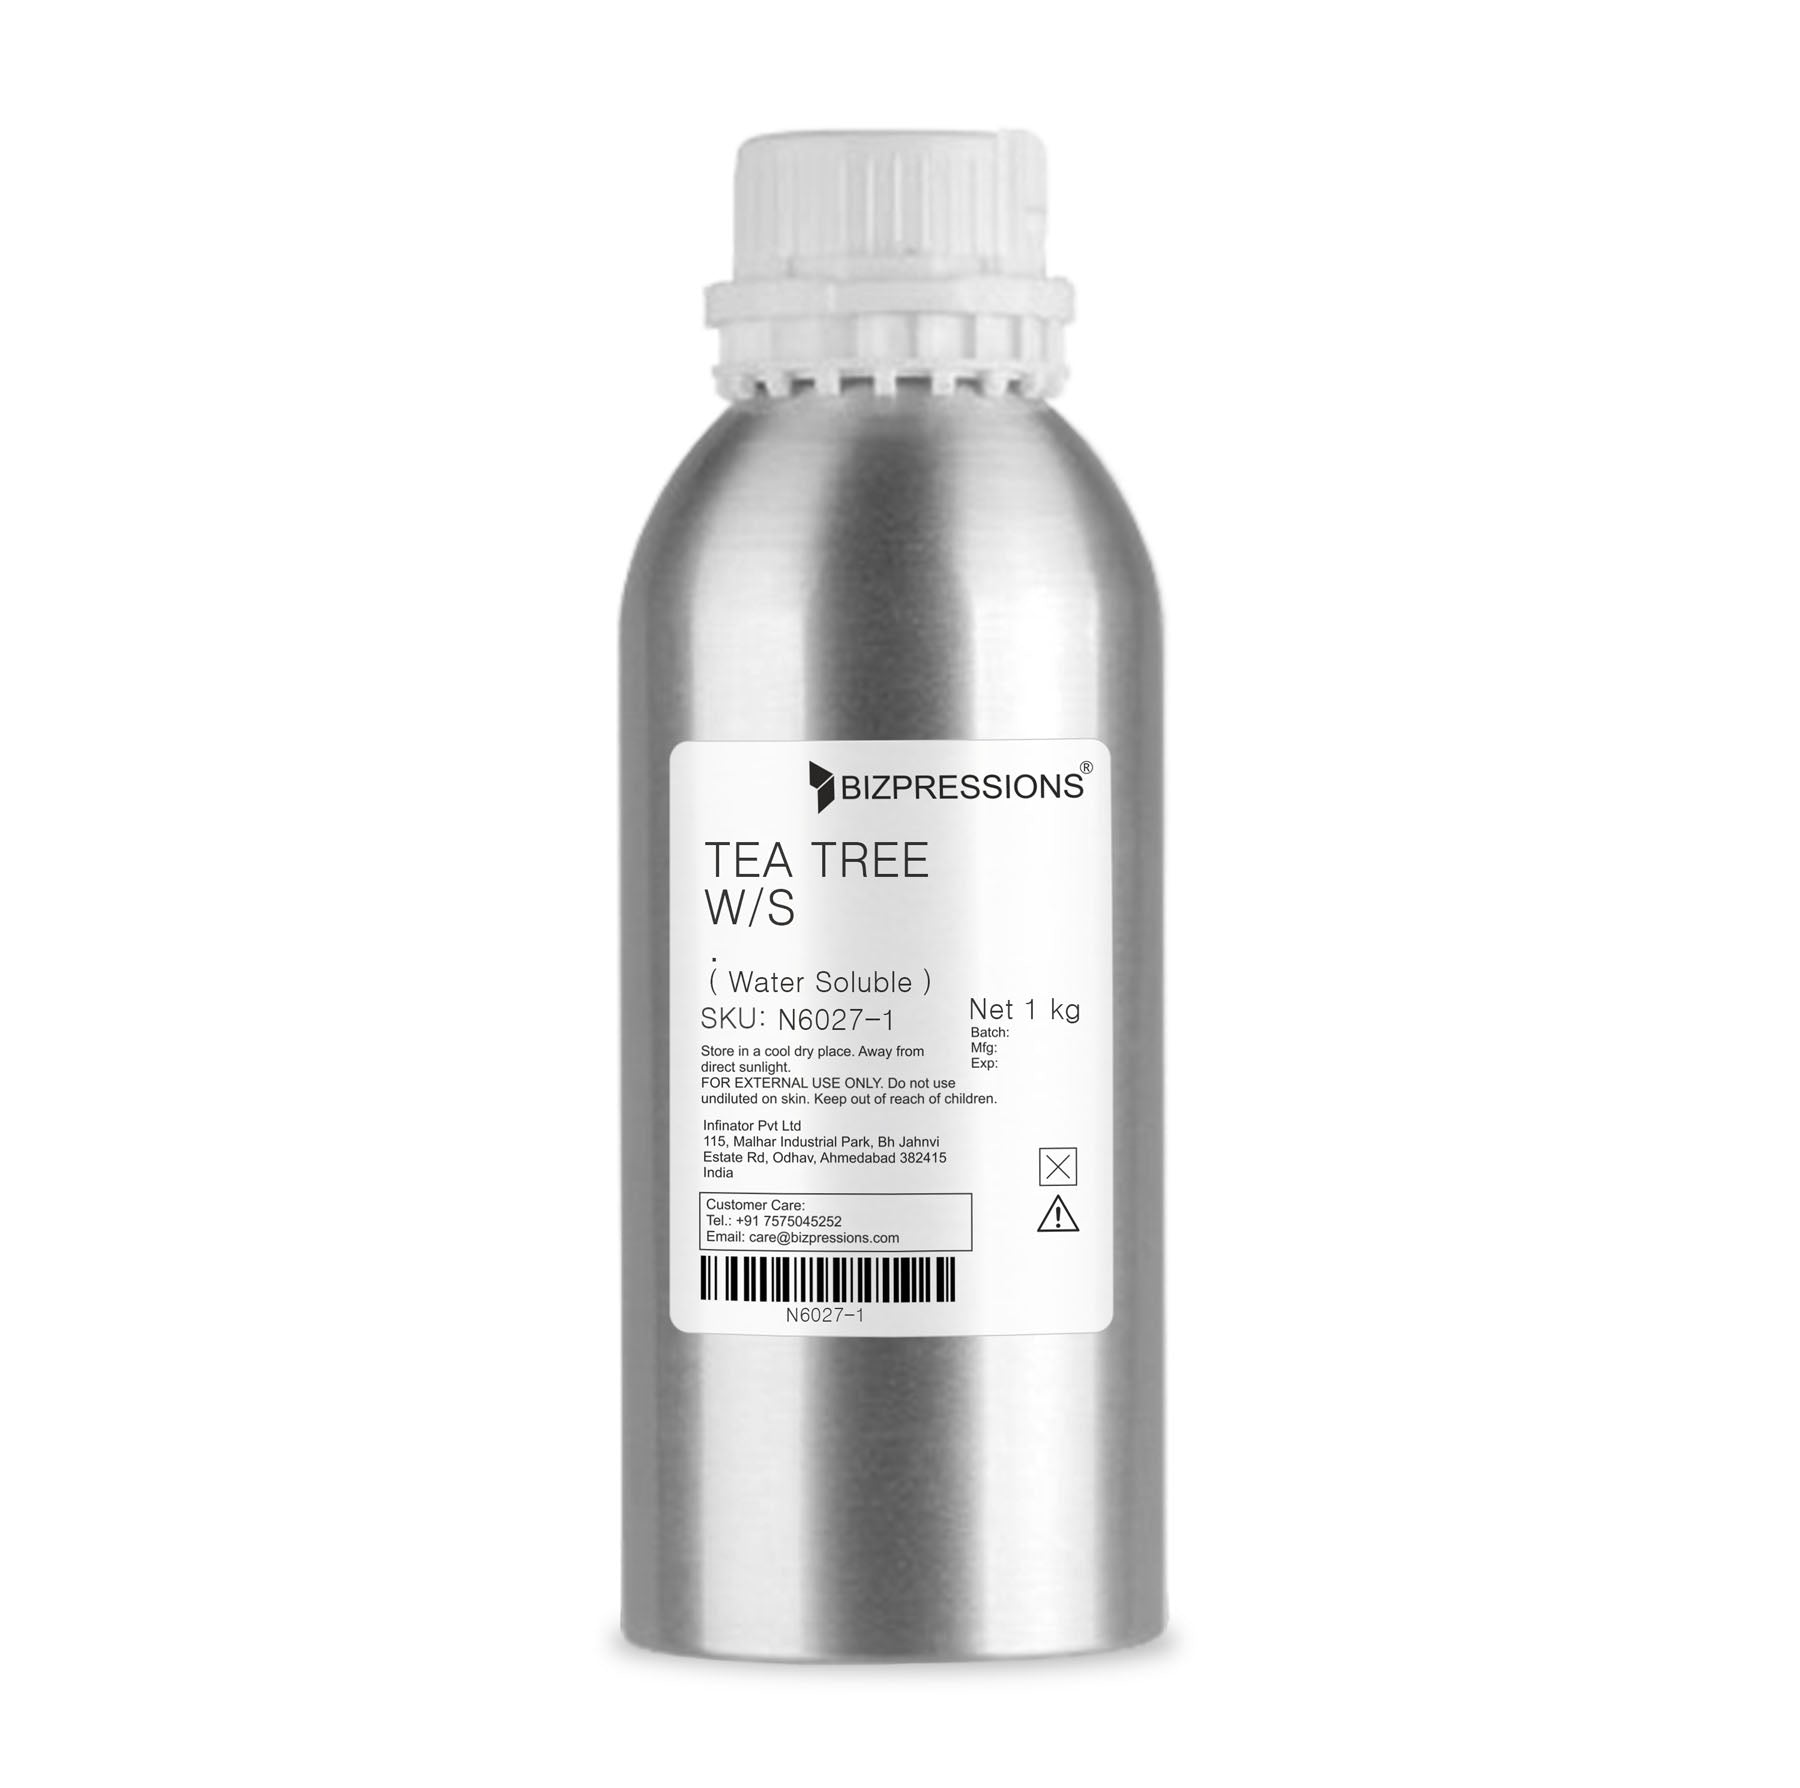 TEA TREE W/S - Fragrance ( Water Soluble ) - 1 kg